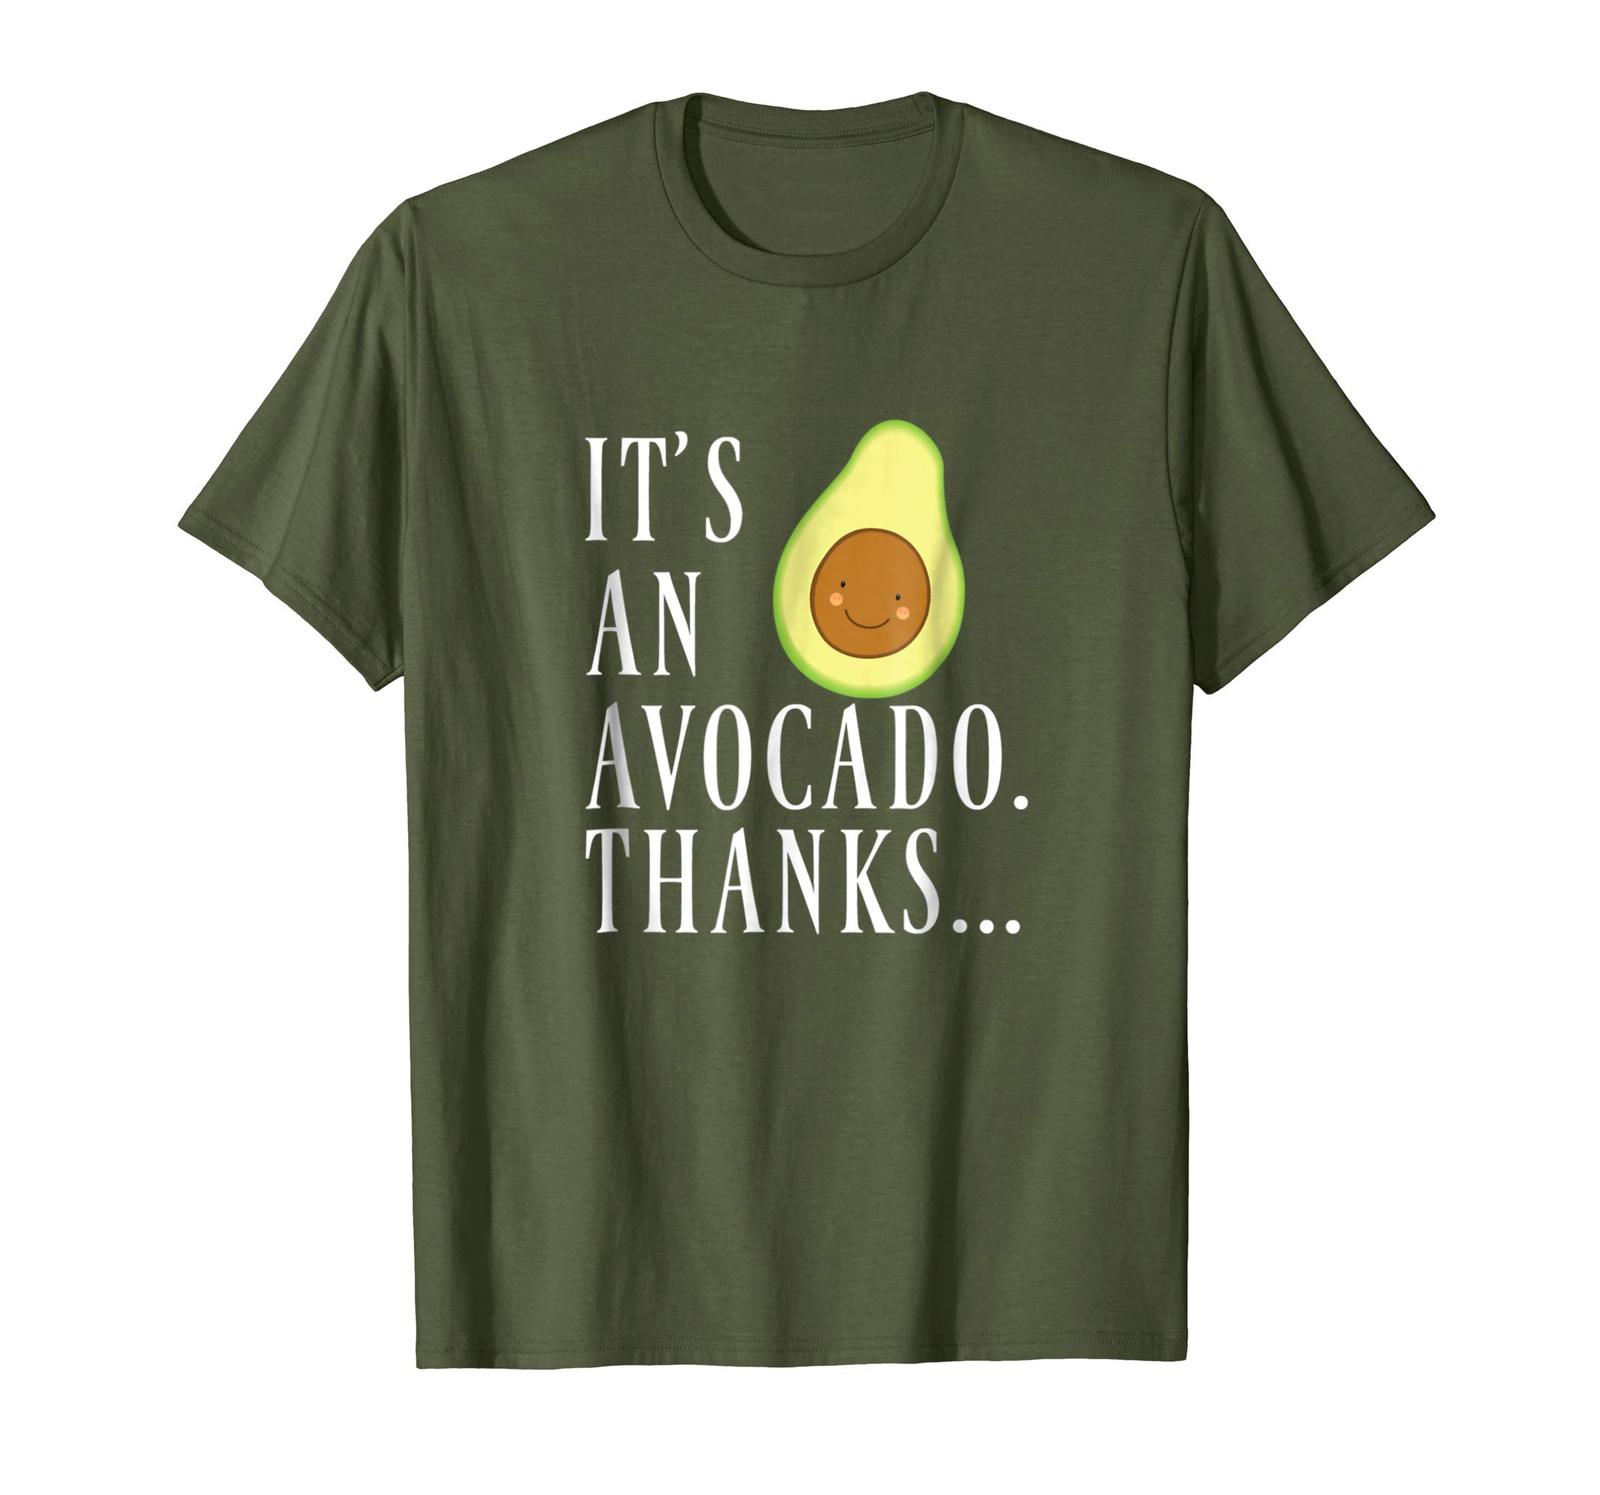 New Shirt - Its an Avocado Thanks Funny Cute Happy Avocado Tshirt Gift ...